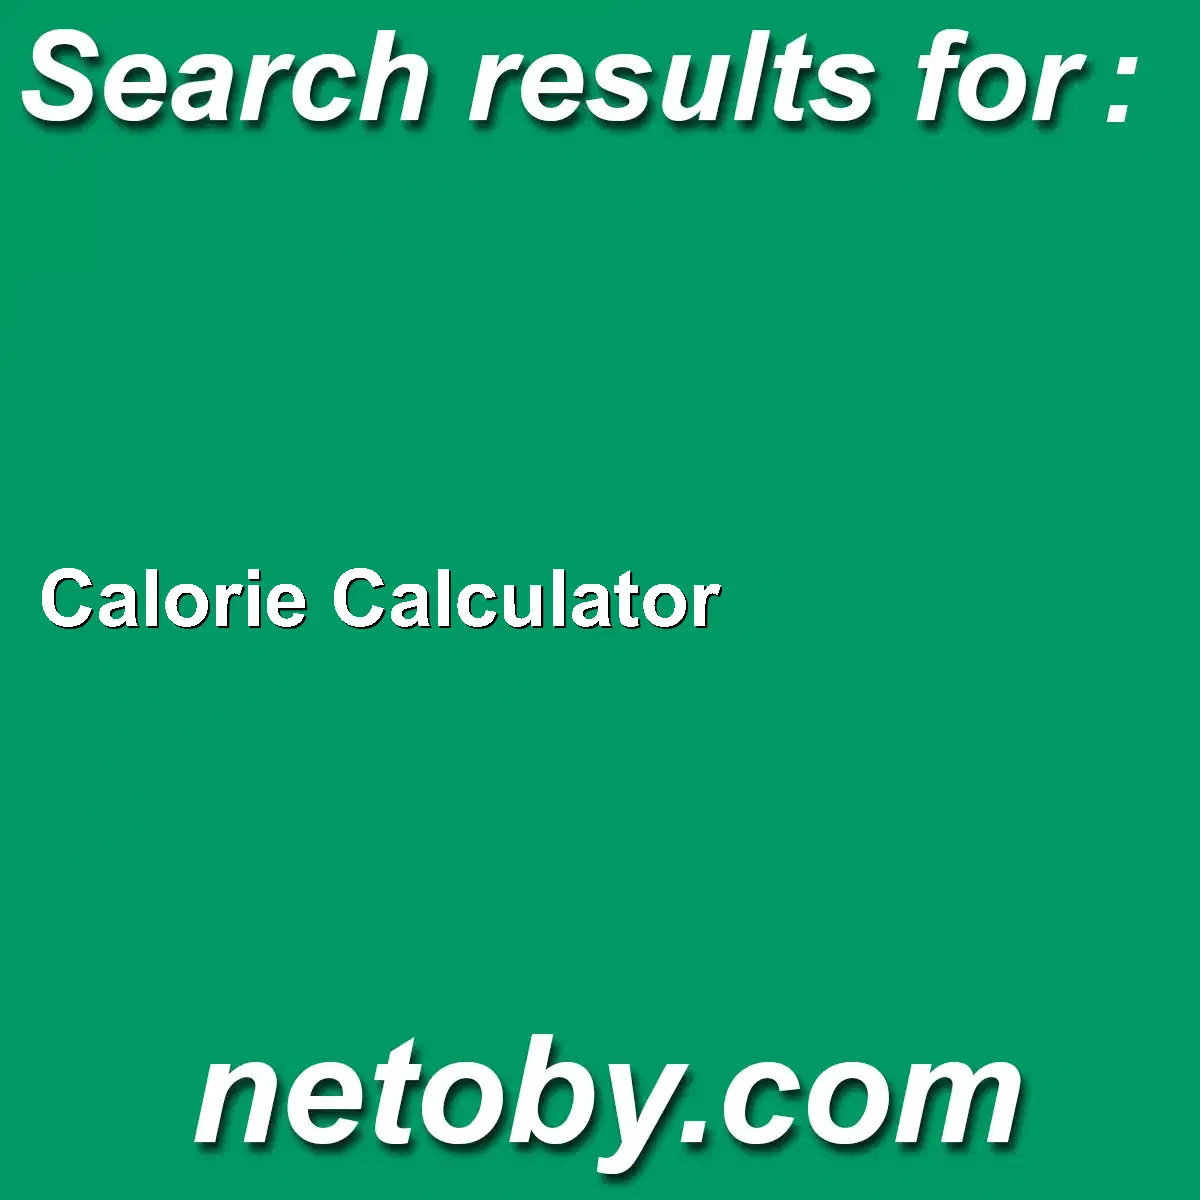 ﻿Calorie Calculator